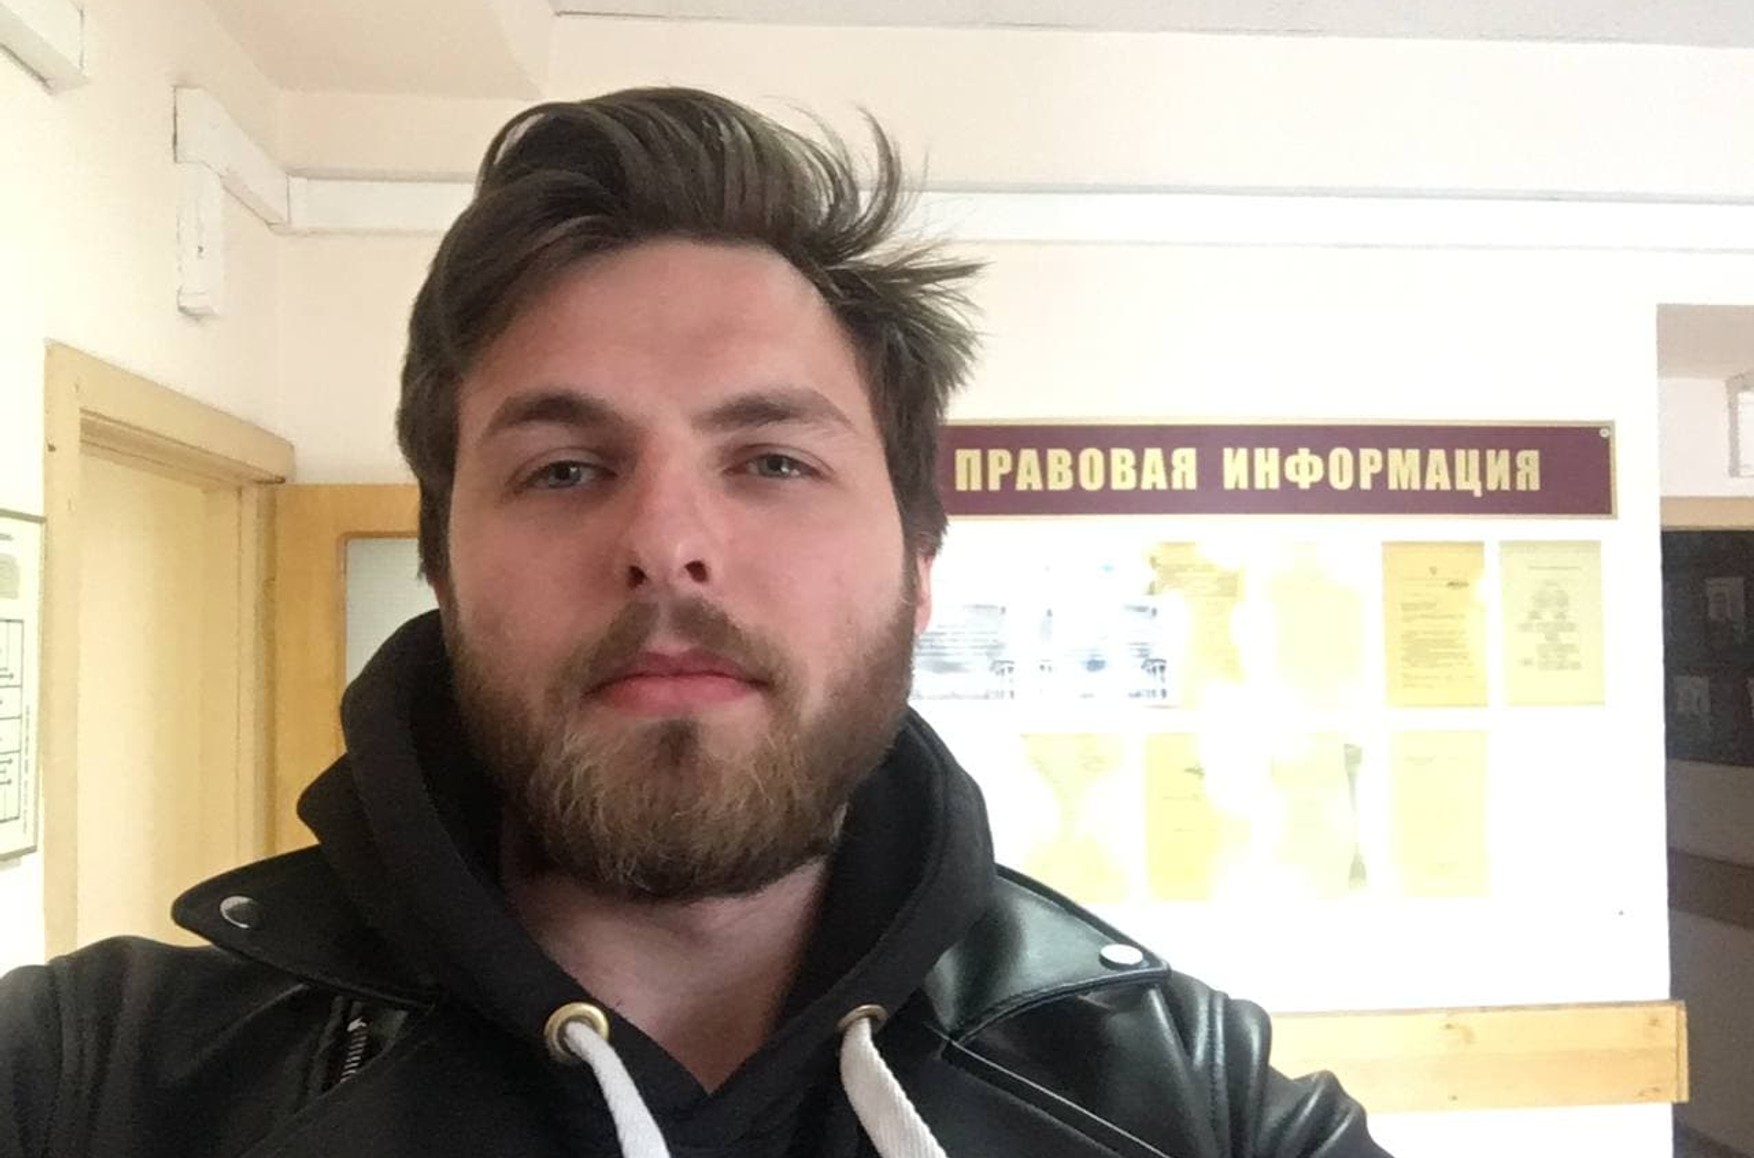 У Москві за участь в акції 21 квітня затримали журналіста «Дождя» Олексія Коростельова. Він був там в жилеті і з прес-картою